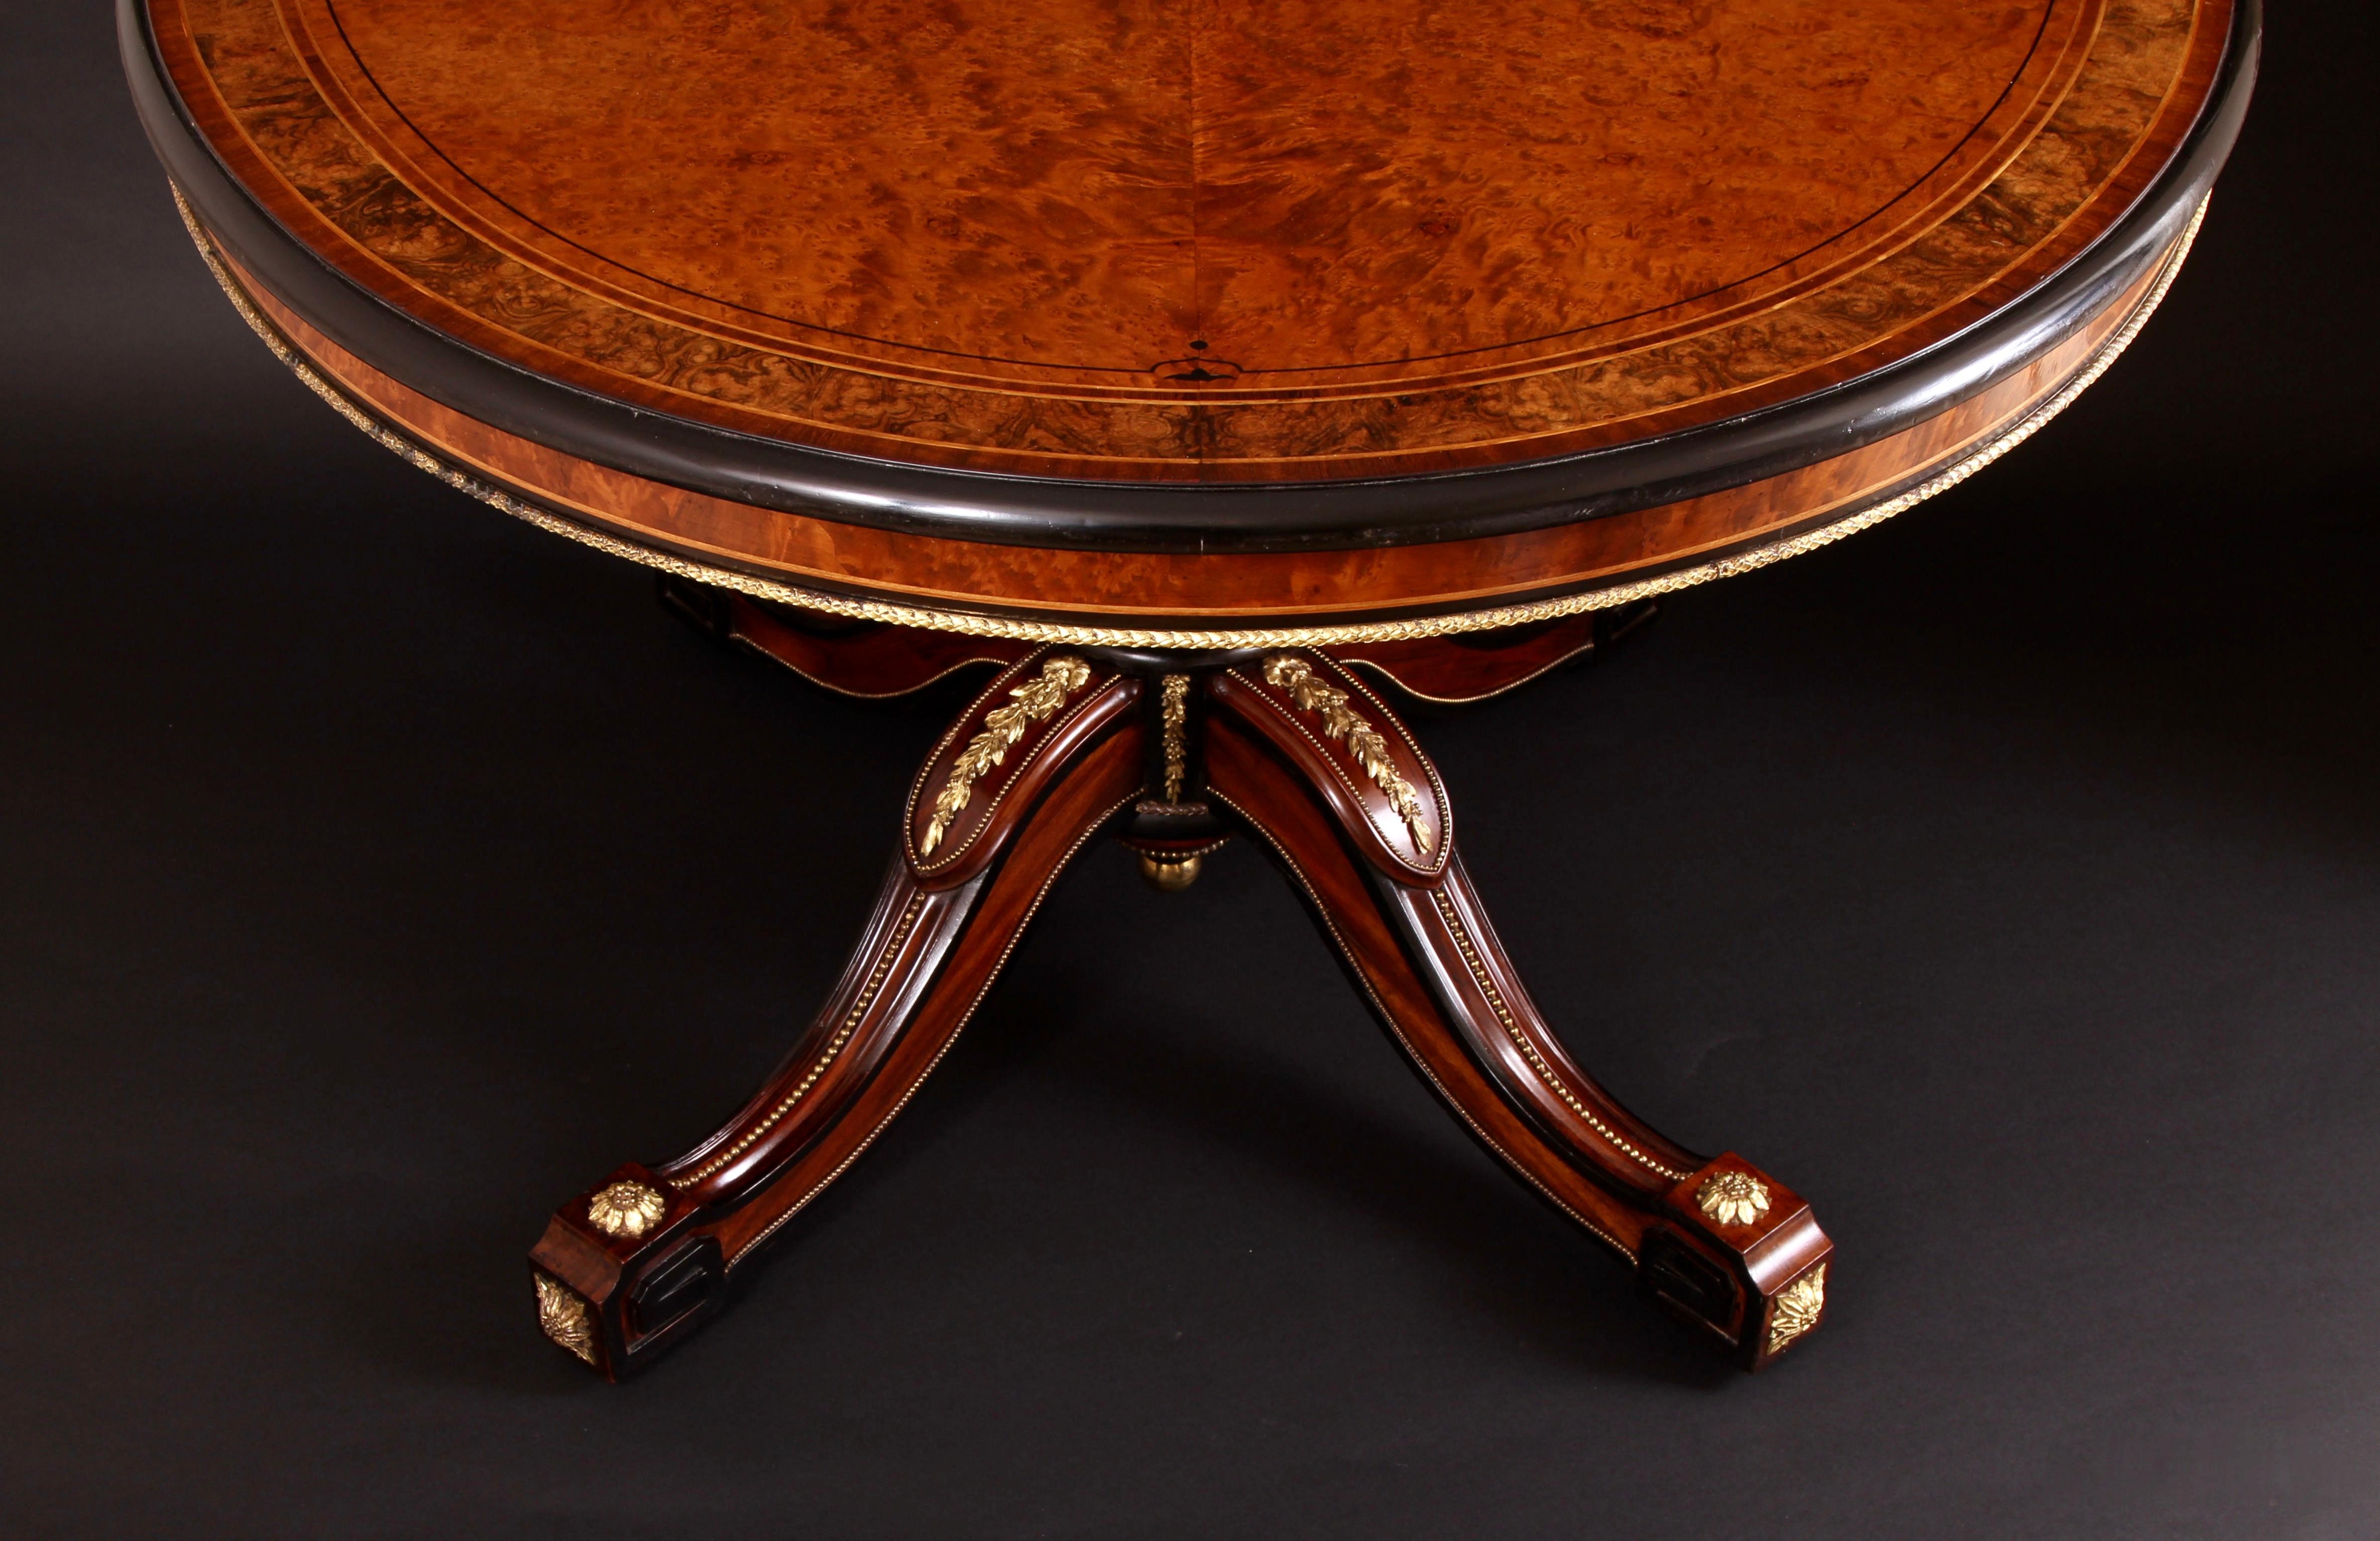 - • Eines der schönsten englischen Möbelstücke des 19. Jahrhunderts, die je hergestellt wurden
• Mit Sicherheit der königlichen Tischlerei Holland & Sons zuzuschreiben
- • Hergestellt aus seltenen und exotischen Hölzern, Thuya und Goncalo Alves,